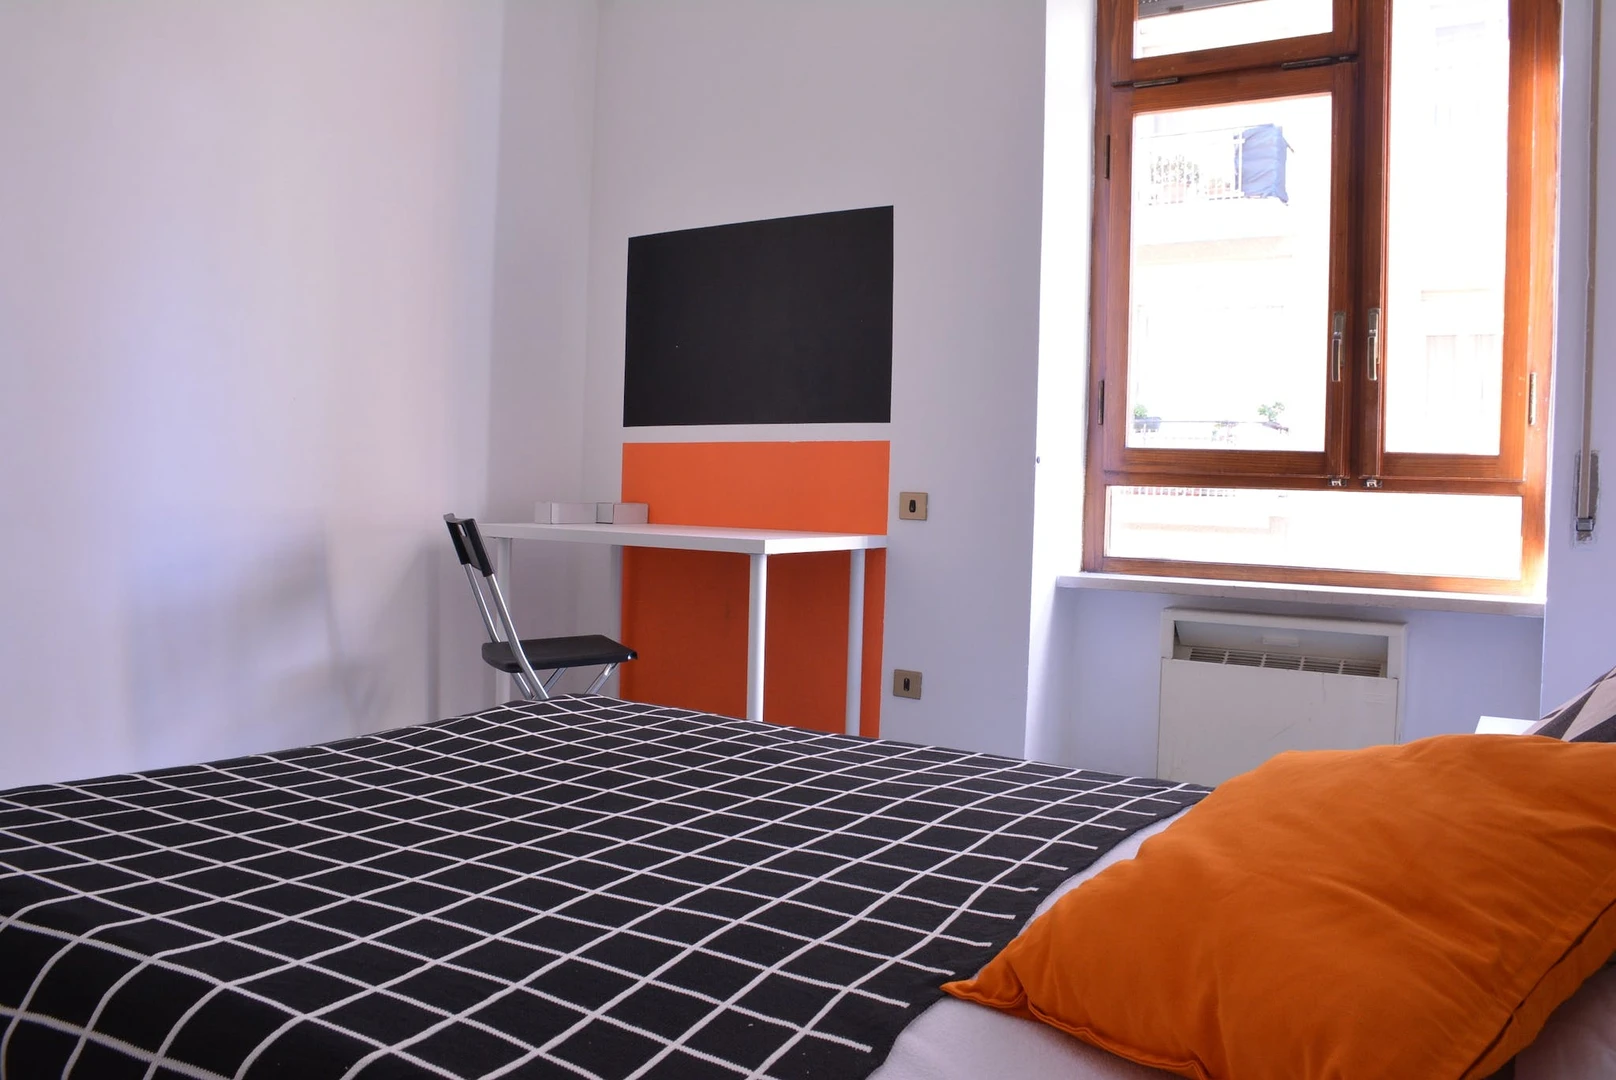 Alquiler de habitación en piso compartido en Casteddu/cagliari